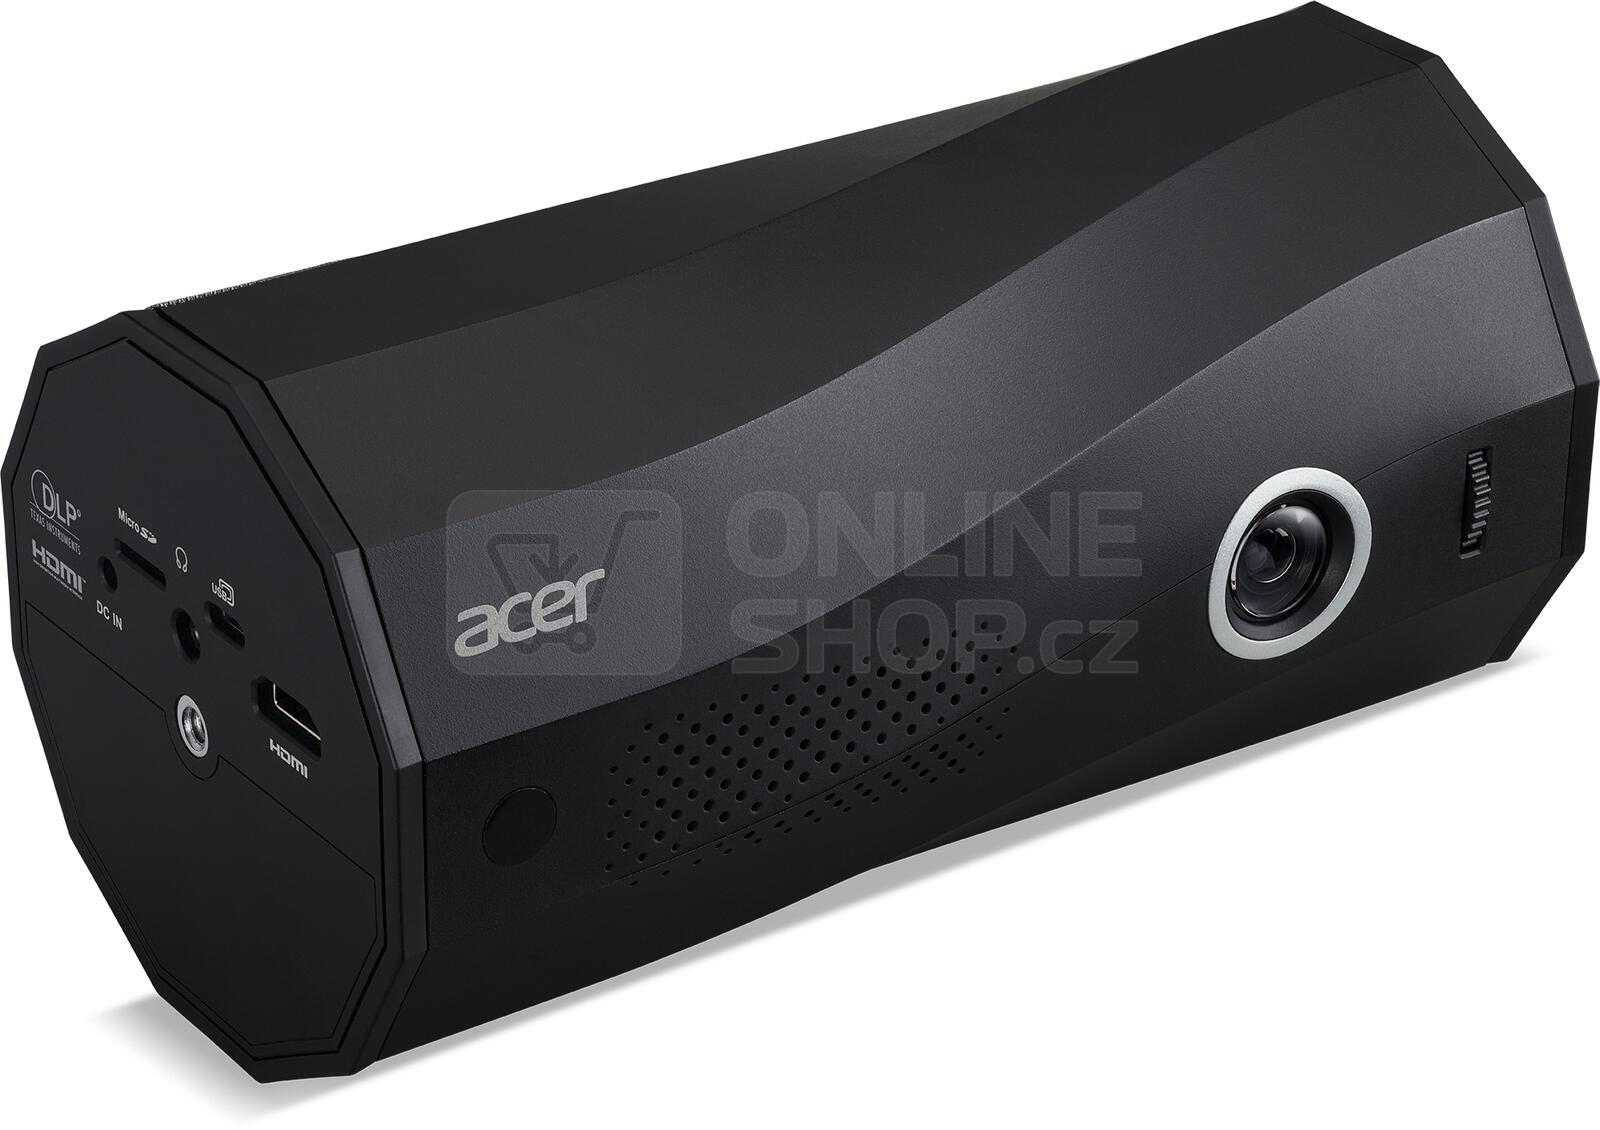 Projektor Acer C250i (MR.JRZ11.001)